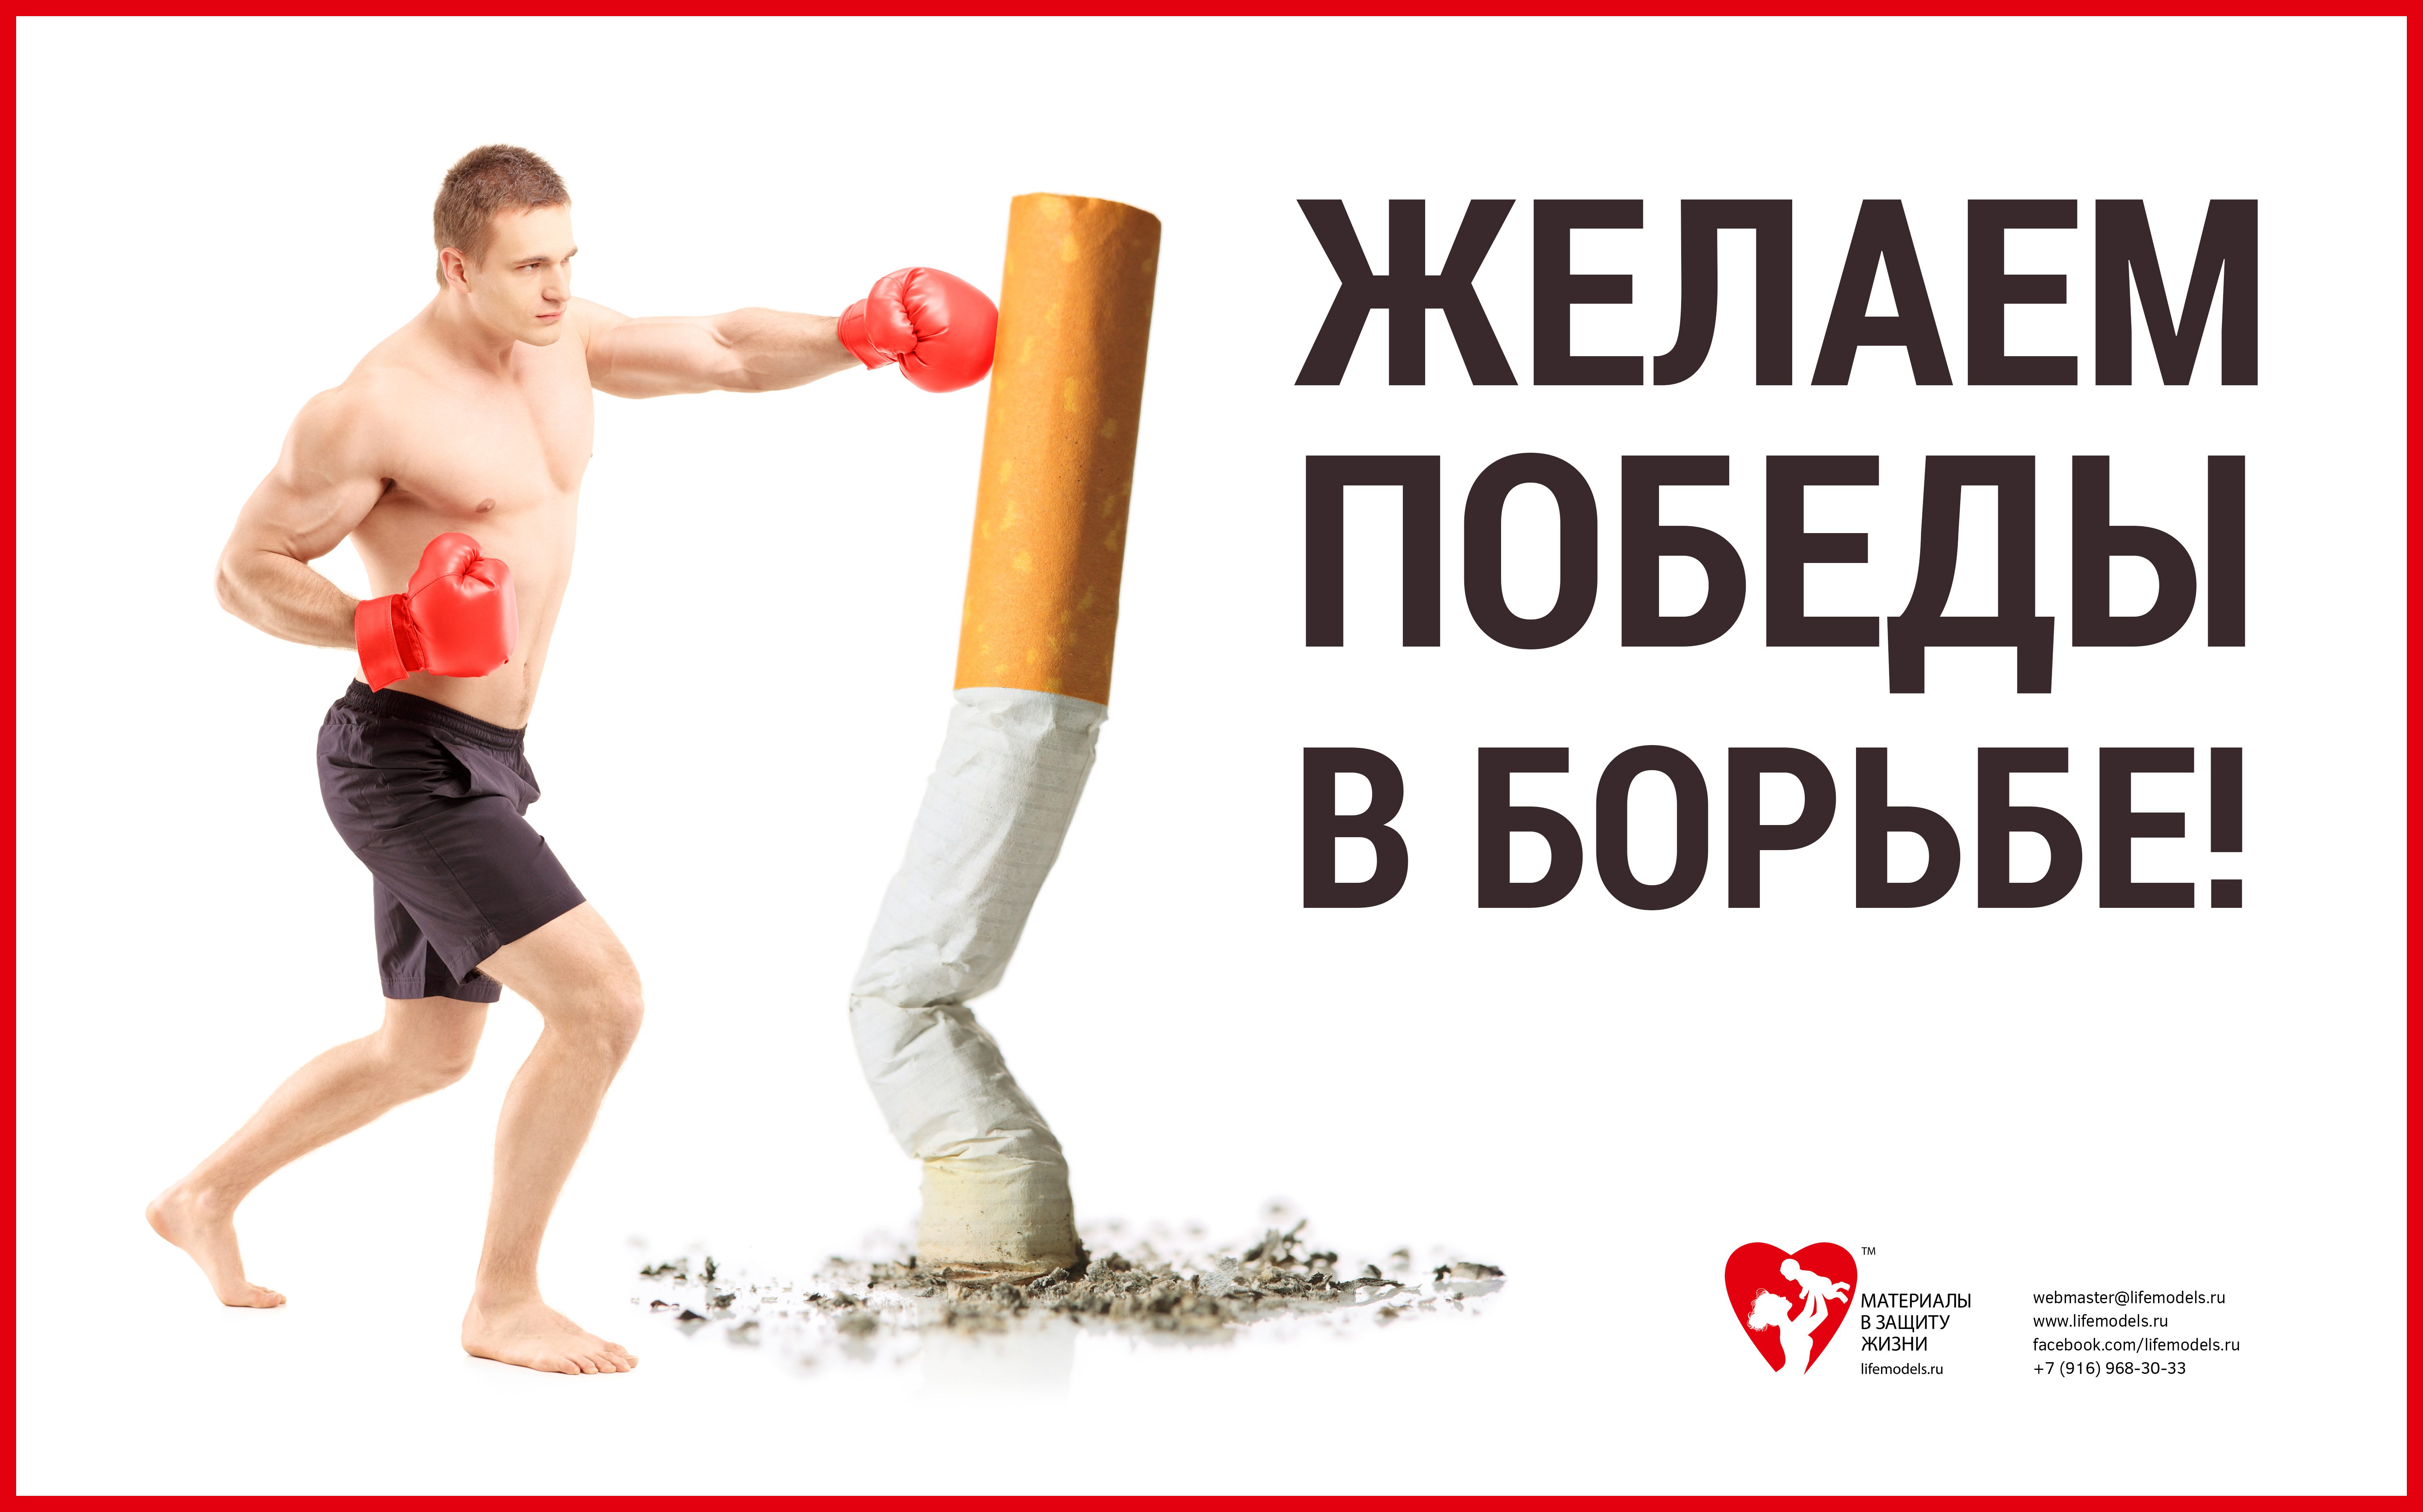 Будь сильным борьба. Баннер против курения. Спорт против курения. Борьба против курения. Реклама борьба с курением.